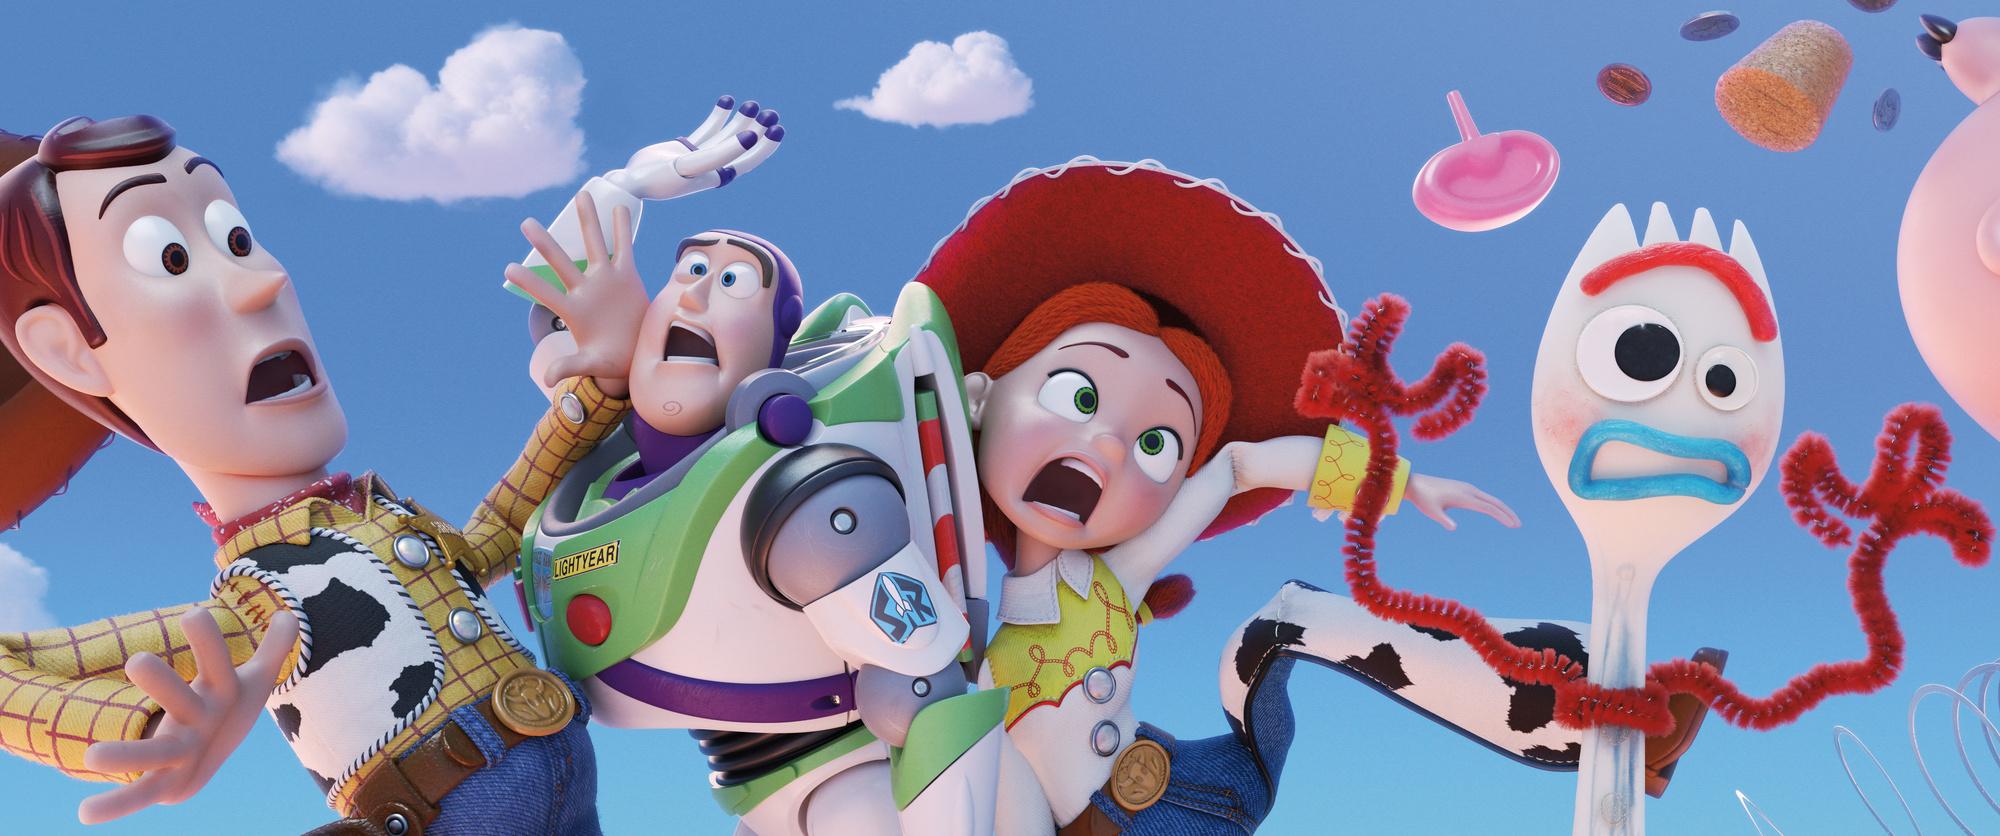 Hoe Toy Story 4 antwoorden bood op de vragen van Pixar